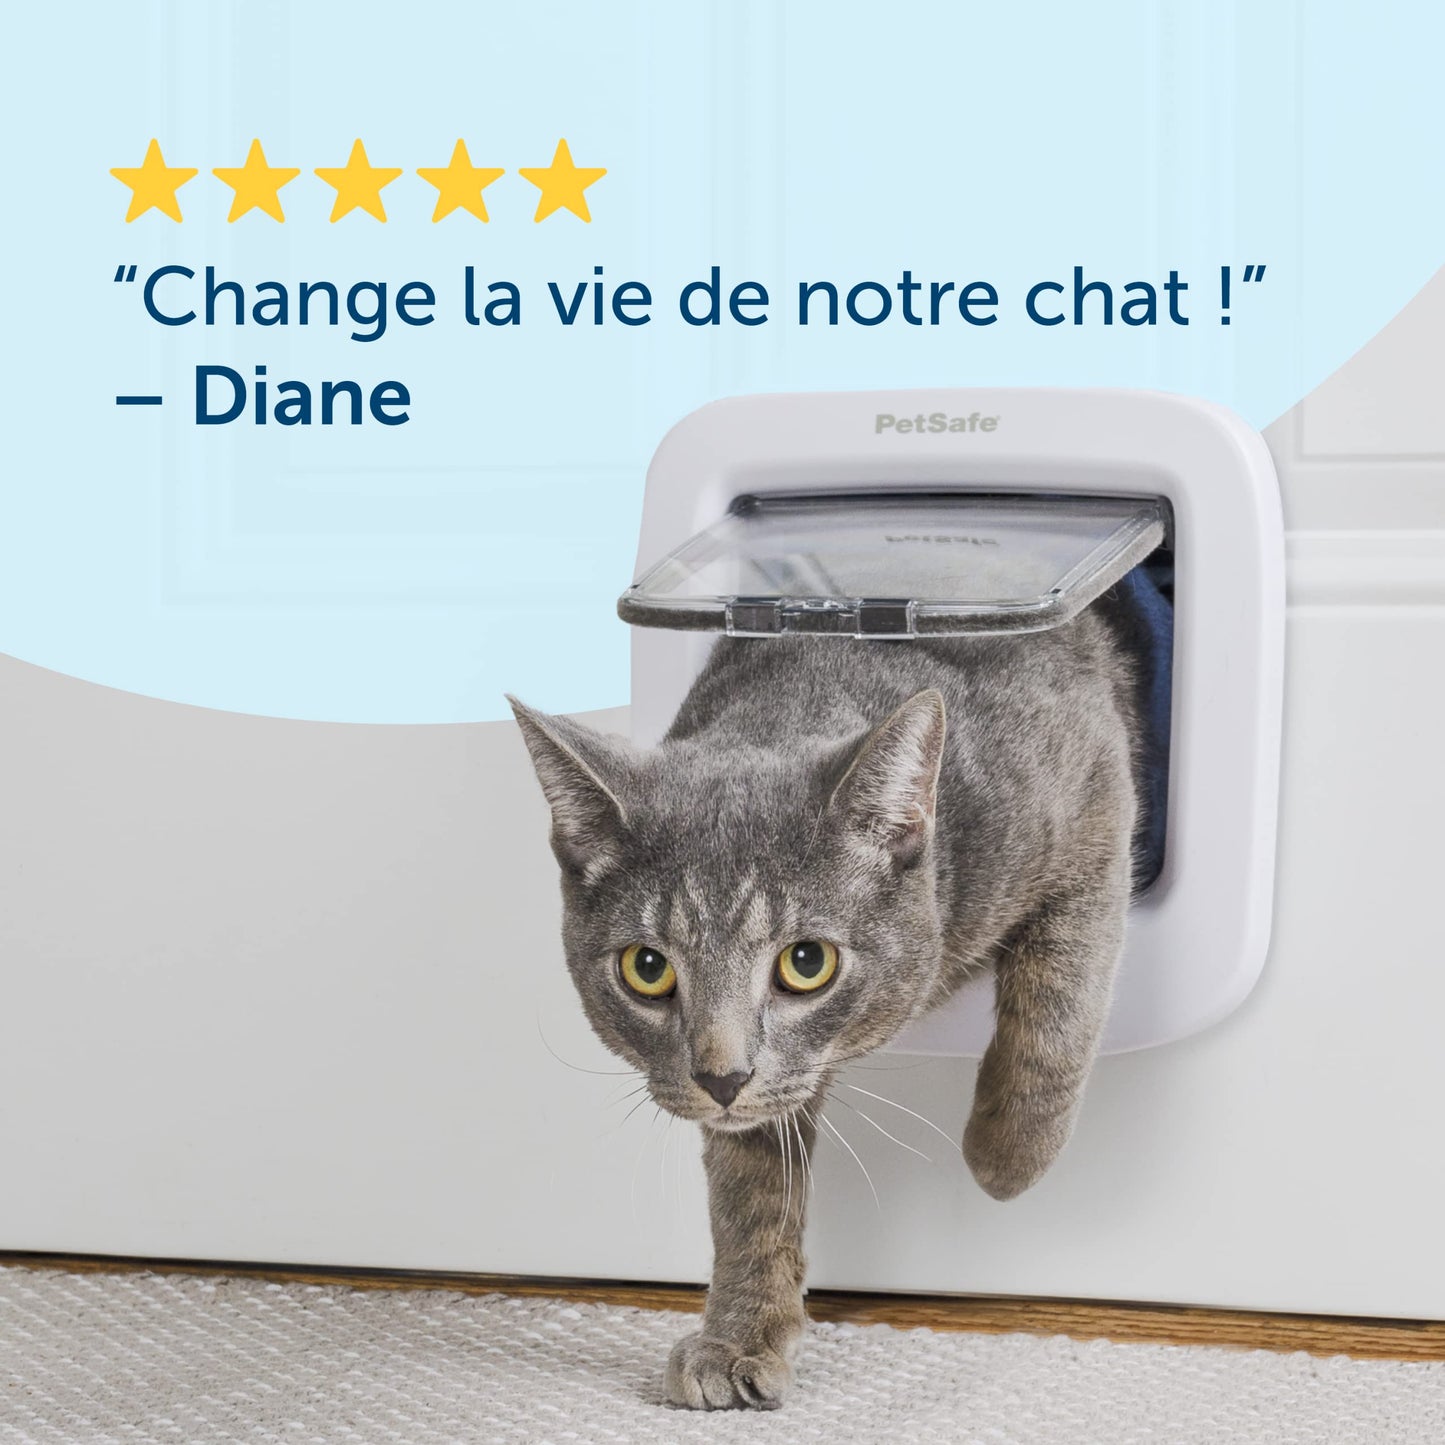 PetSafe Chatière à puce électronique, accès sélectif pour votre chat, empêche les étrangers d'entrer, installation facile, chats jusqu'à 7 kg, blanc